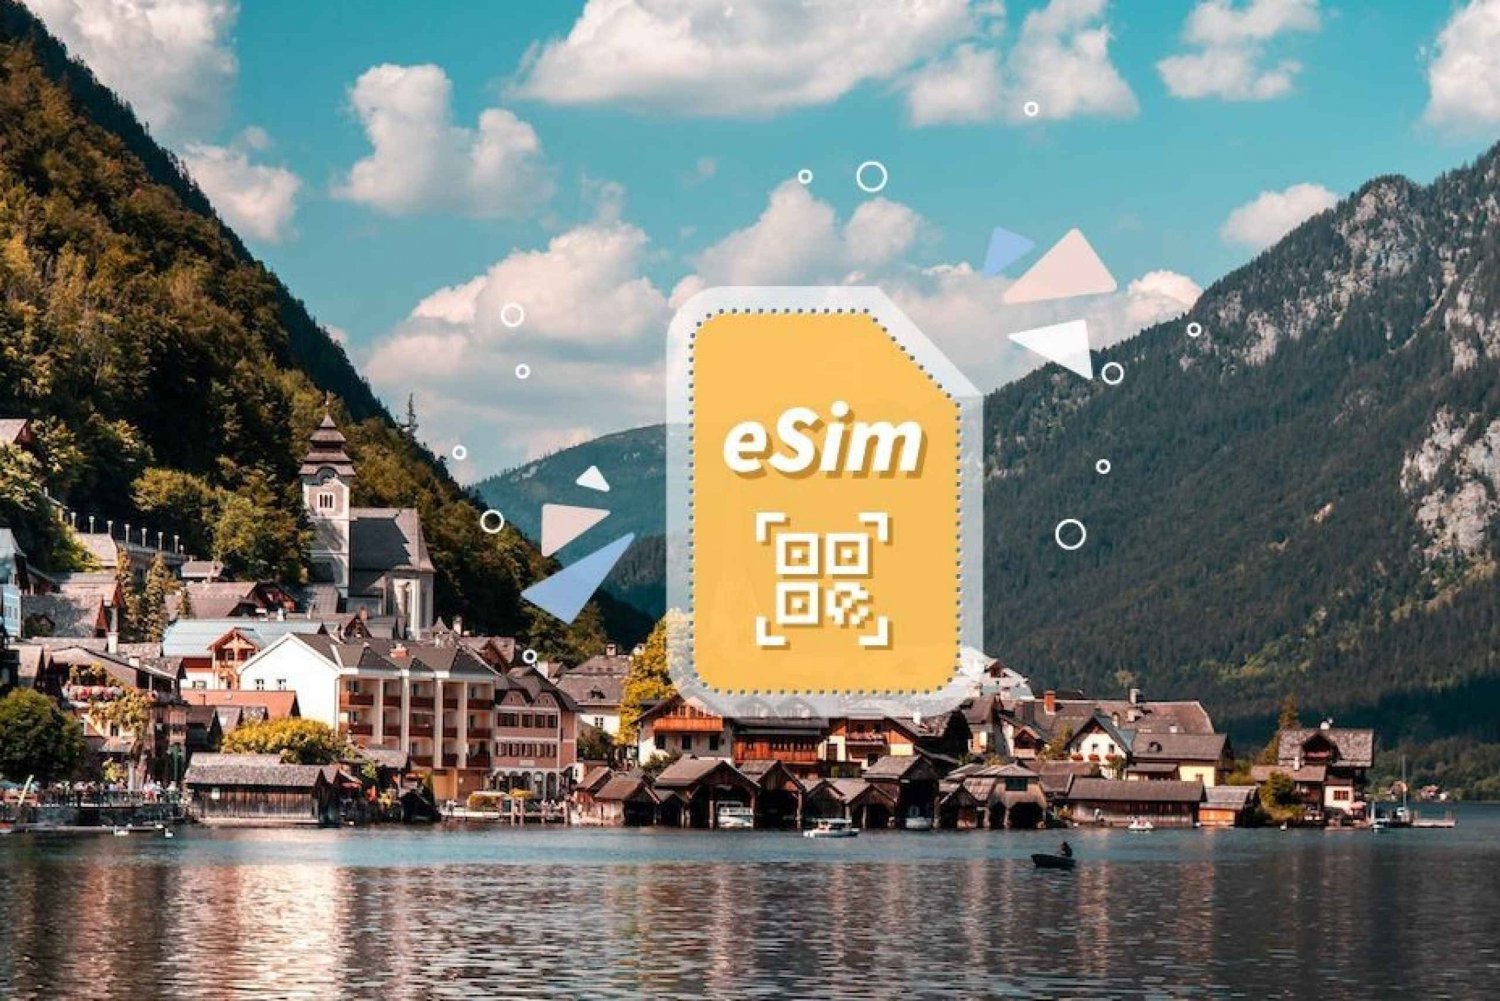 Austria/Europa: Piano dati mobile 5G eSim